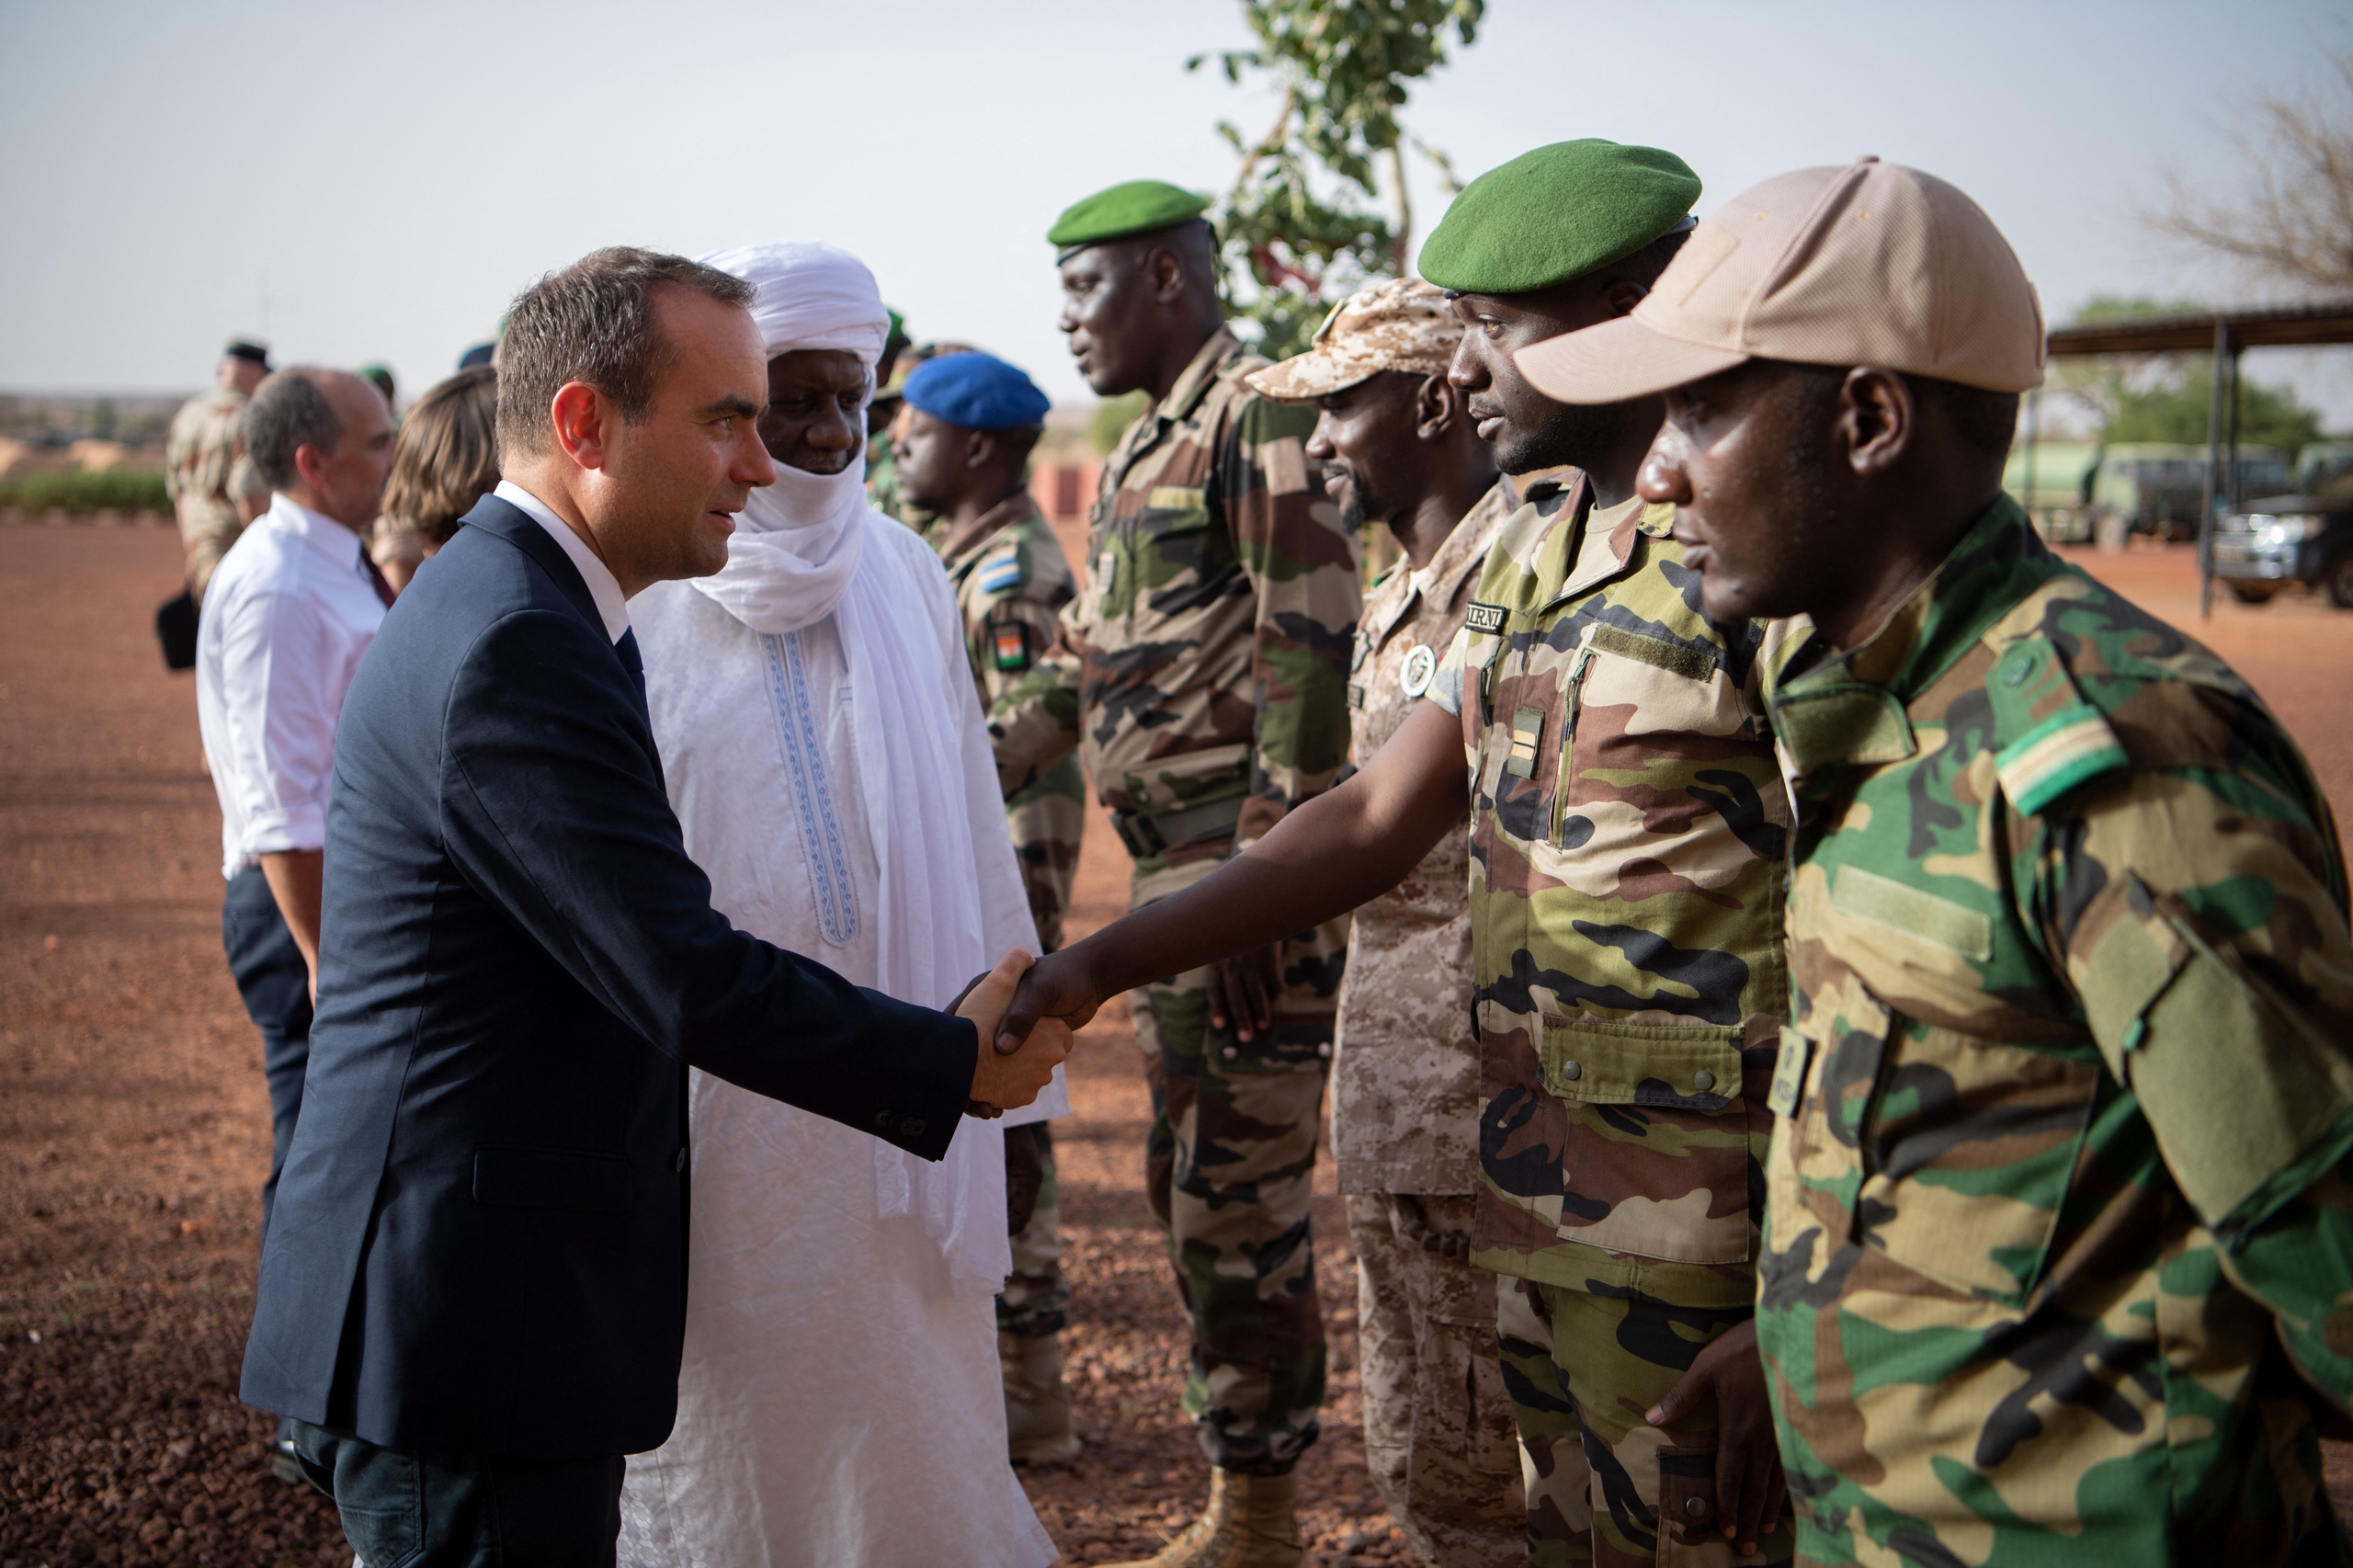 De Franse minister van Defensie Sebastien Lecornu (l) en de minister van Defensie van Niger Alkassoum Indatou. Het einde van operatie Barkhane heeft geen onmiddellijke gevolgen voor de Franse militaire aanwezigheid in de Sahel. Die bestaat uit ongeveer 3000 soldaten in Niger, Tsjaad en Burkina Faso. Zij blijven strijden tegen jihadistische groeperingen die banden hebben met al-Qaeda of Islamitische Staat.